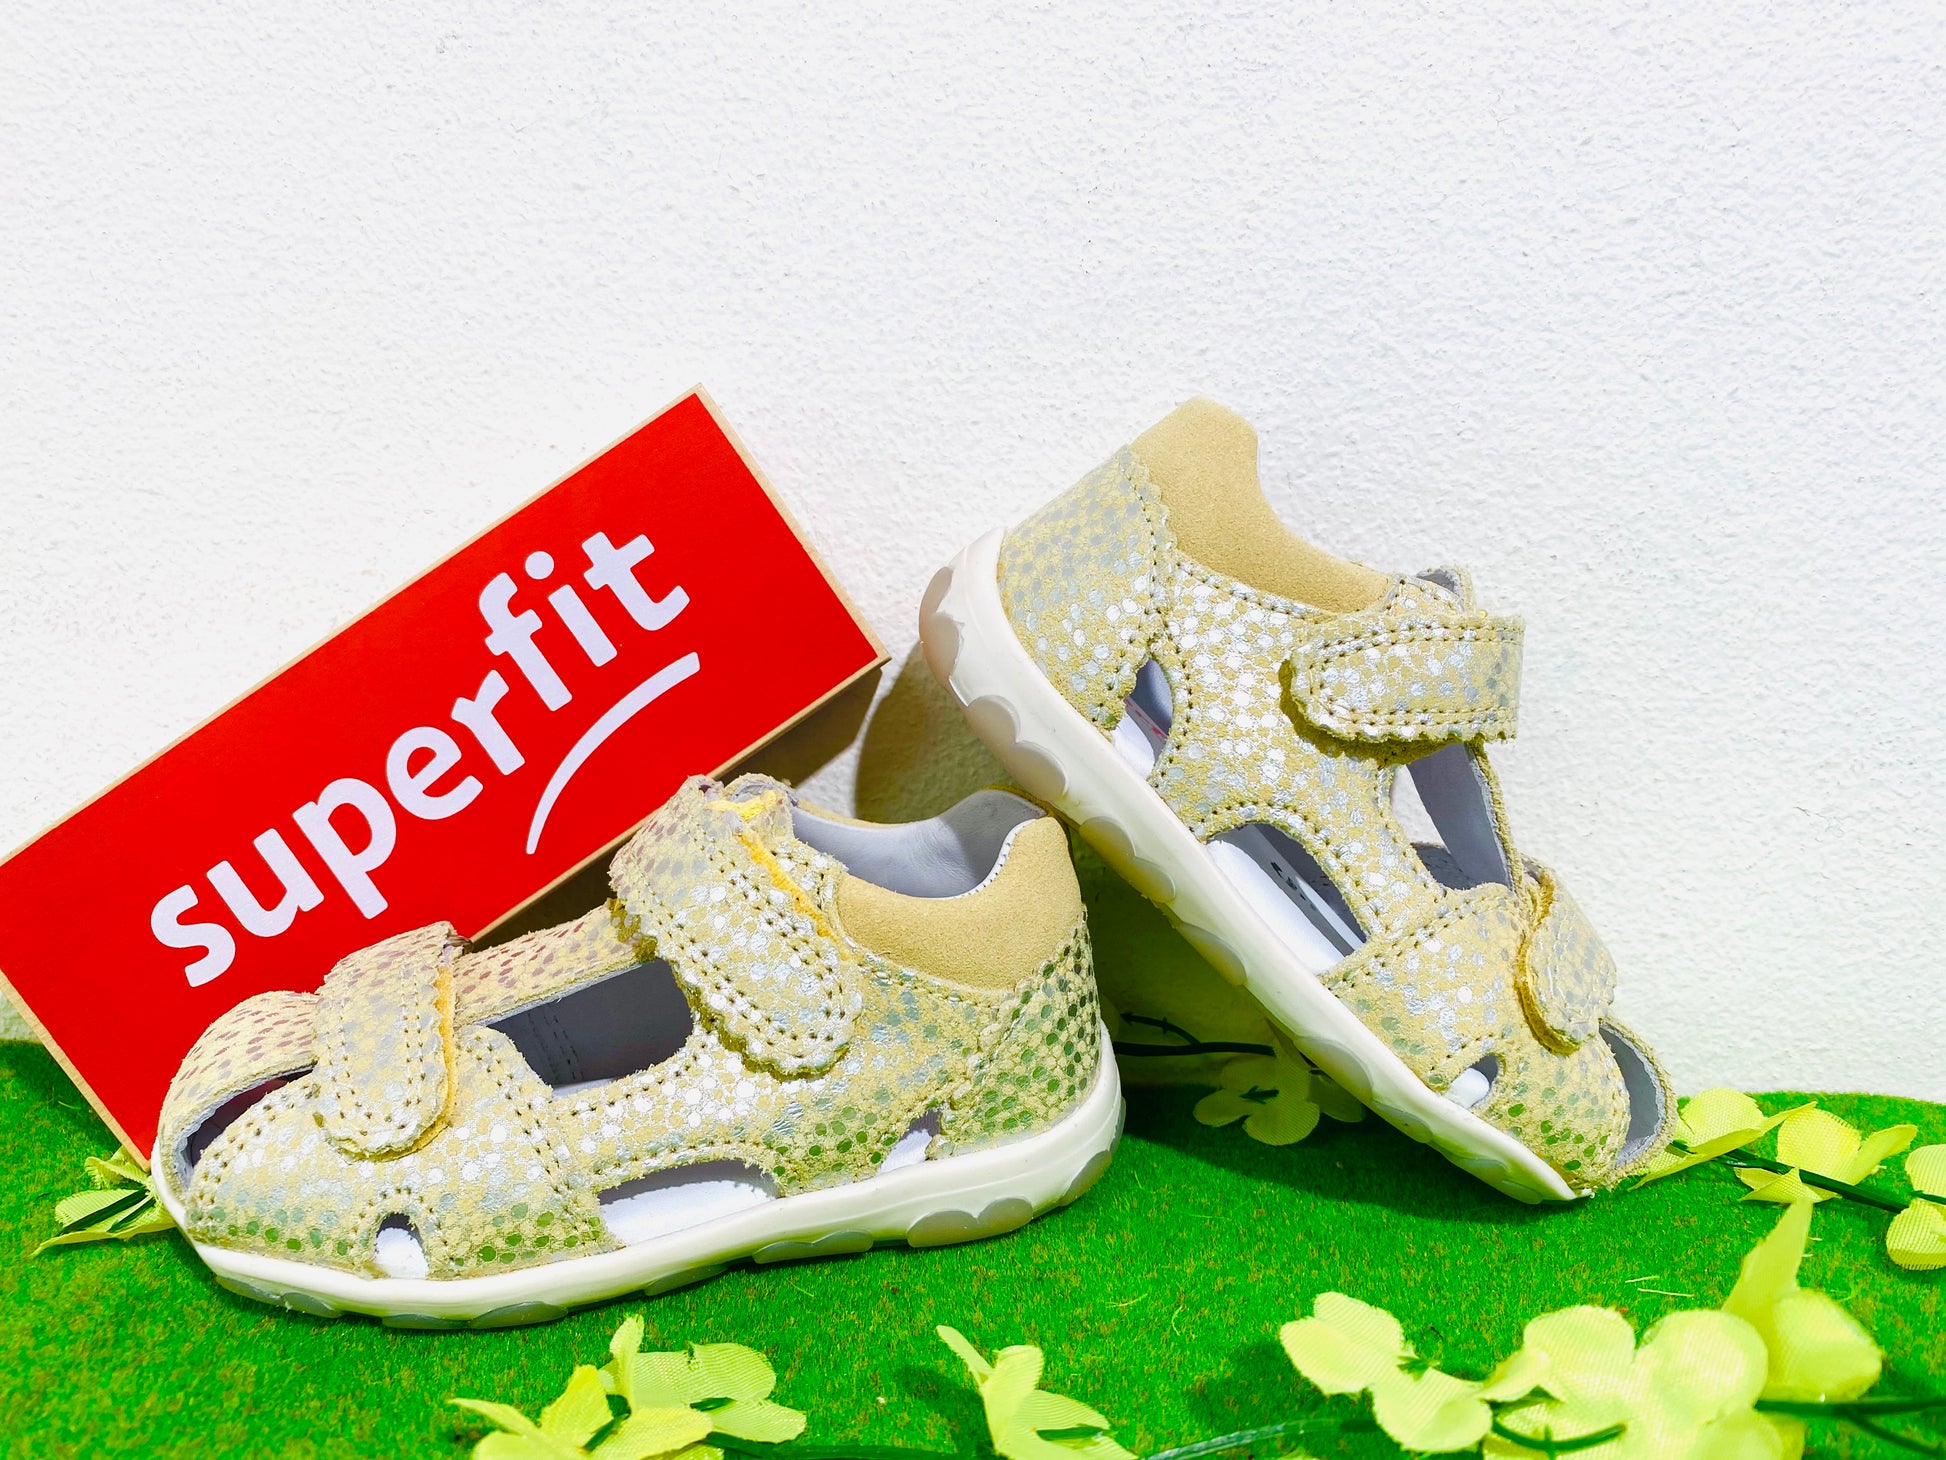 SuperFit closed sandal yellow/silver - Kirbys Footwear Ltd